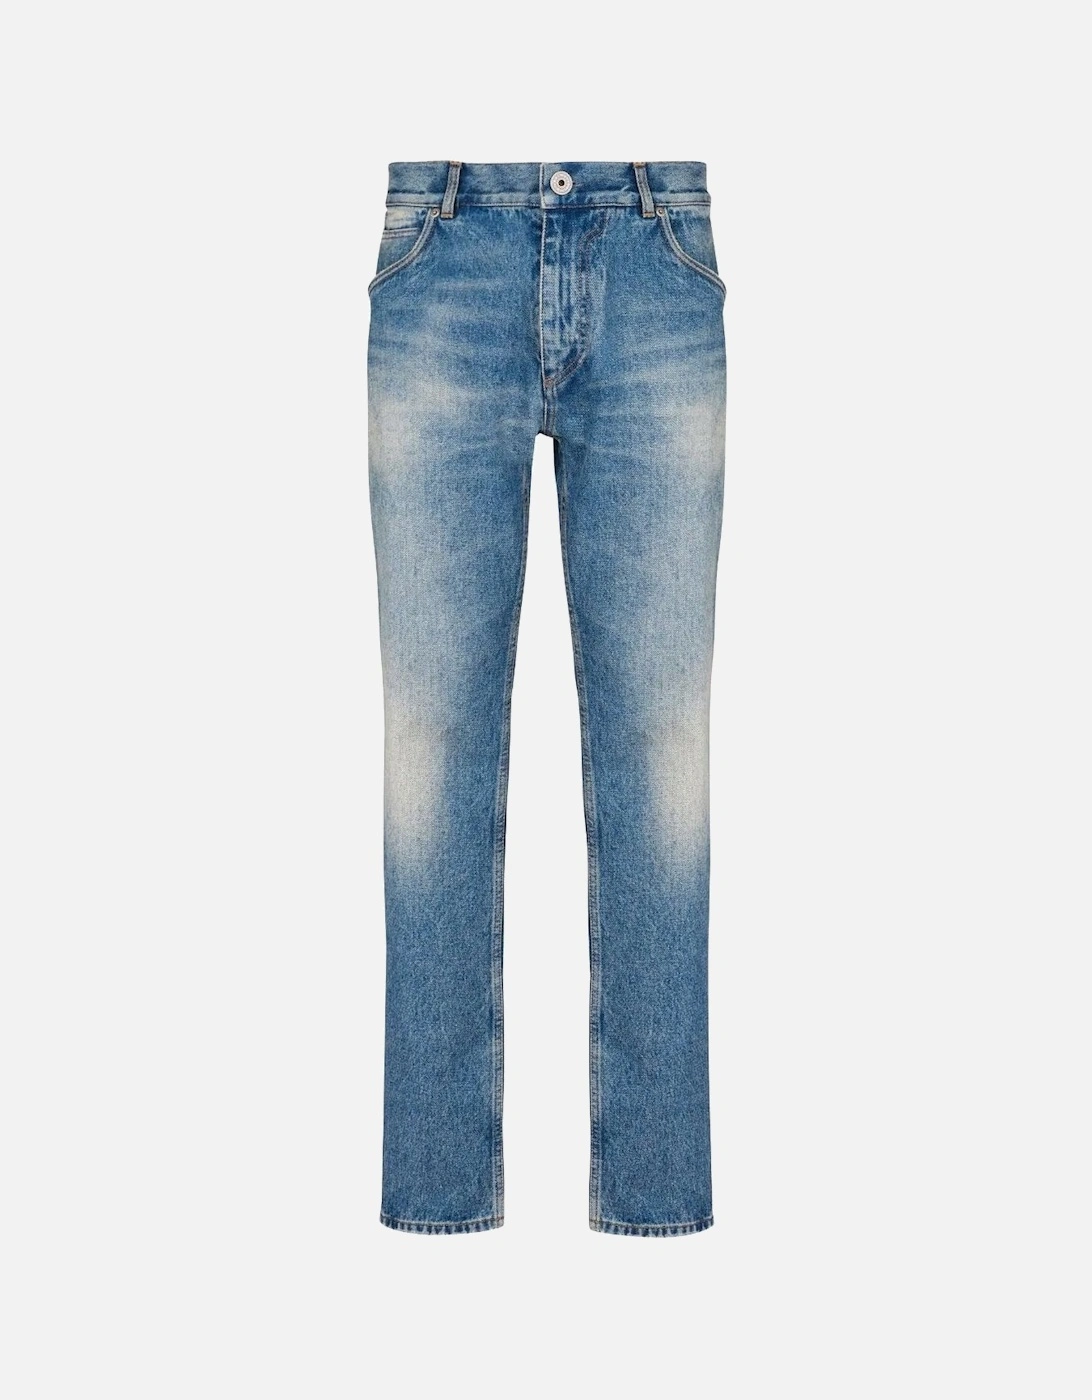 Vintage Denim Jeans Blue, 8 of 7